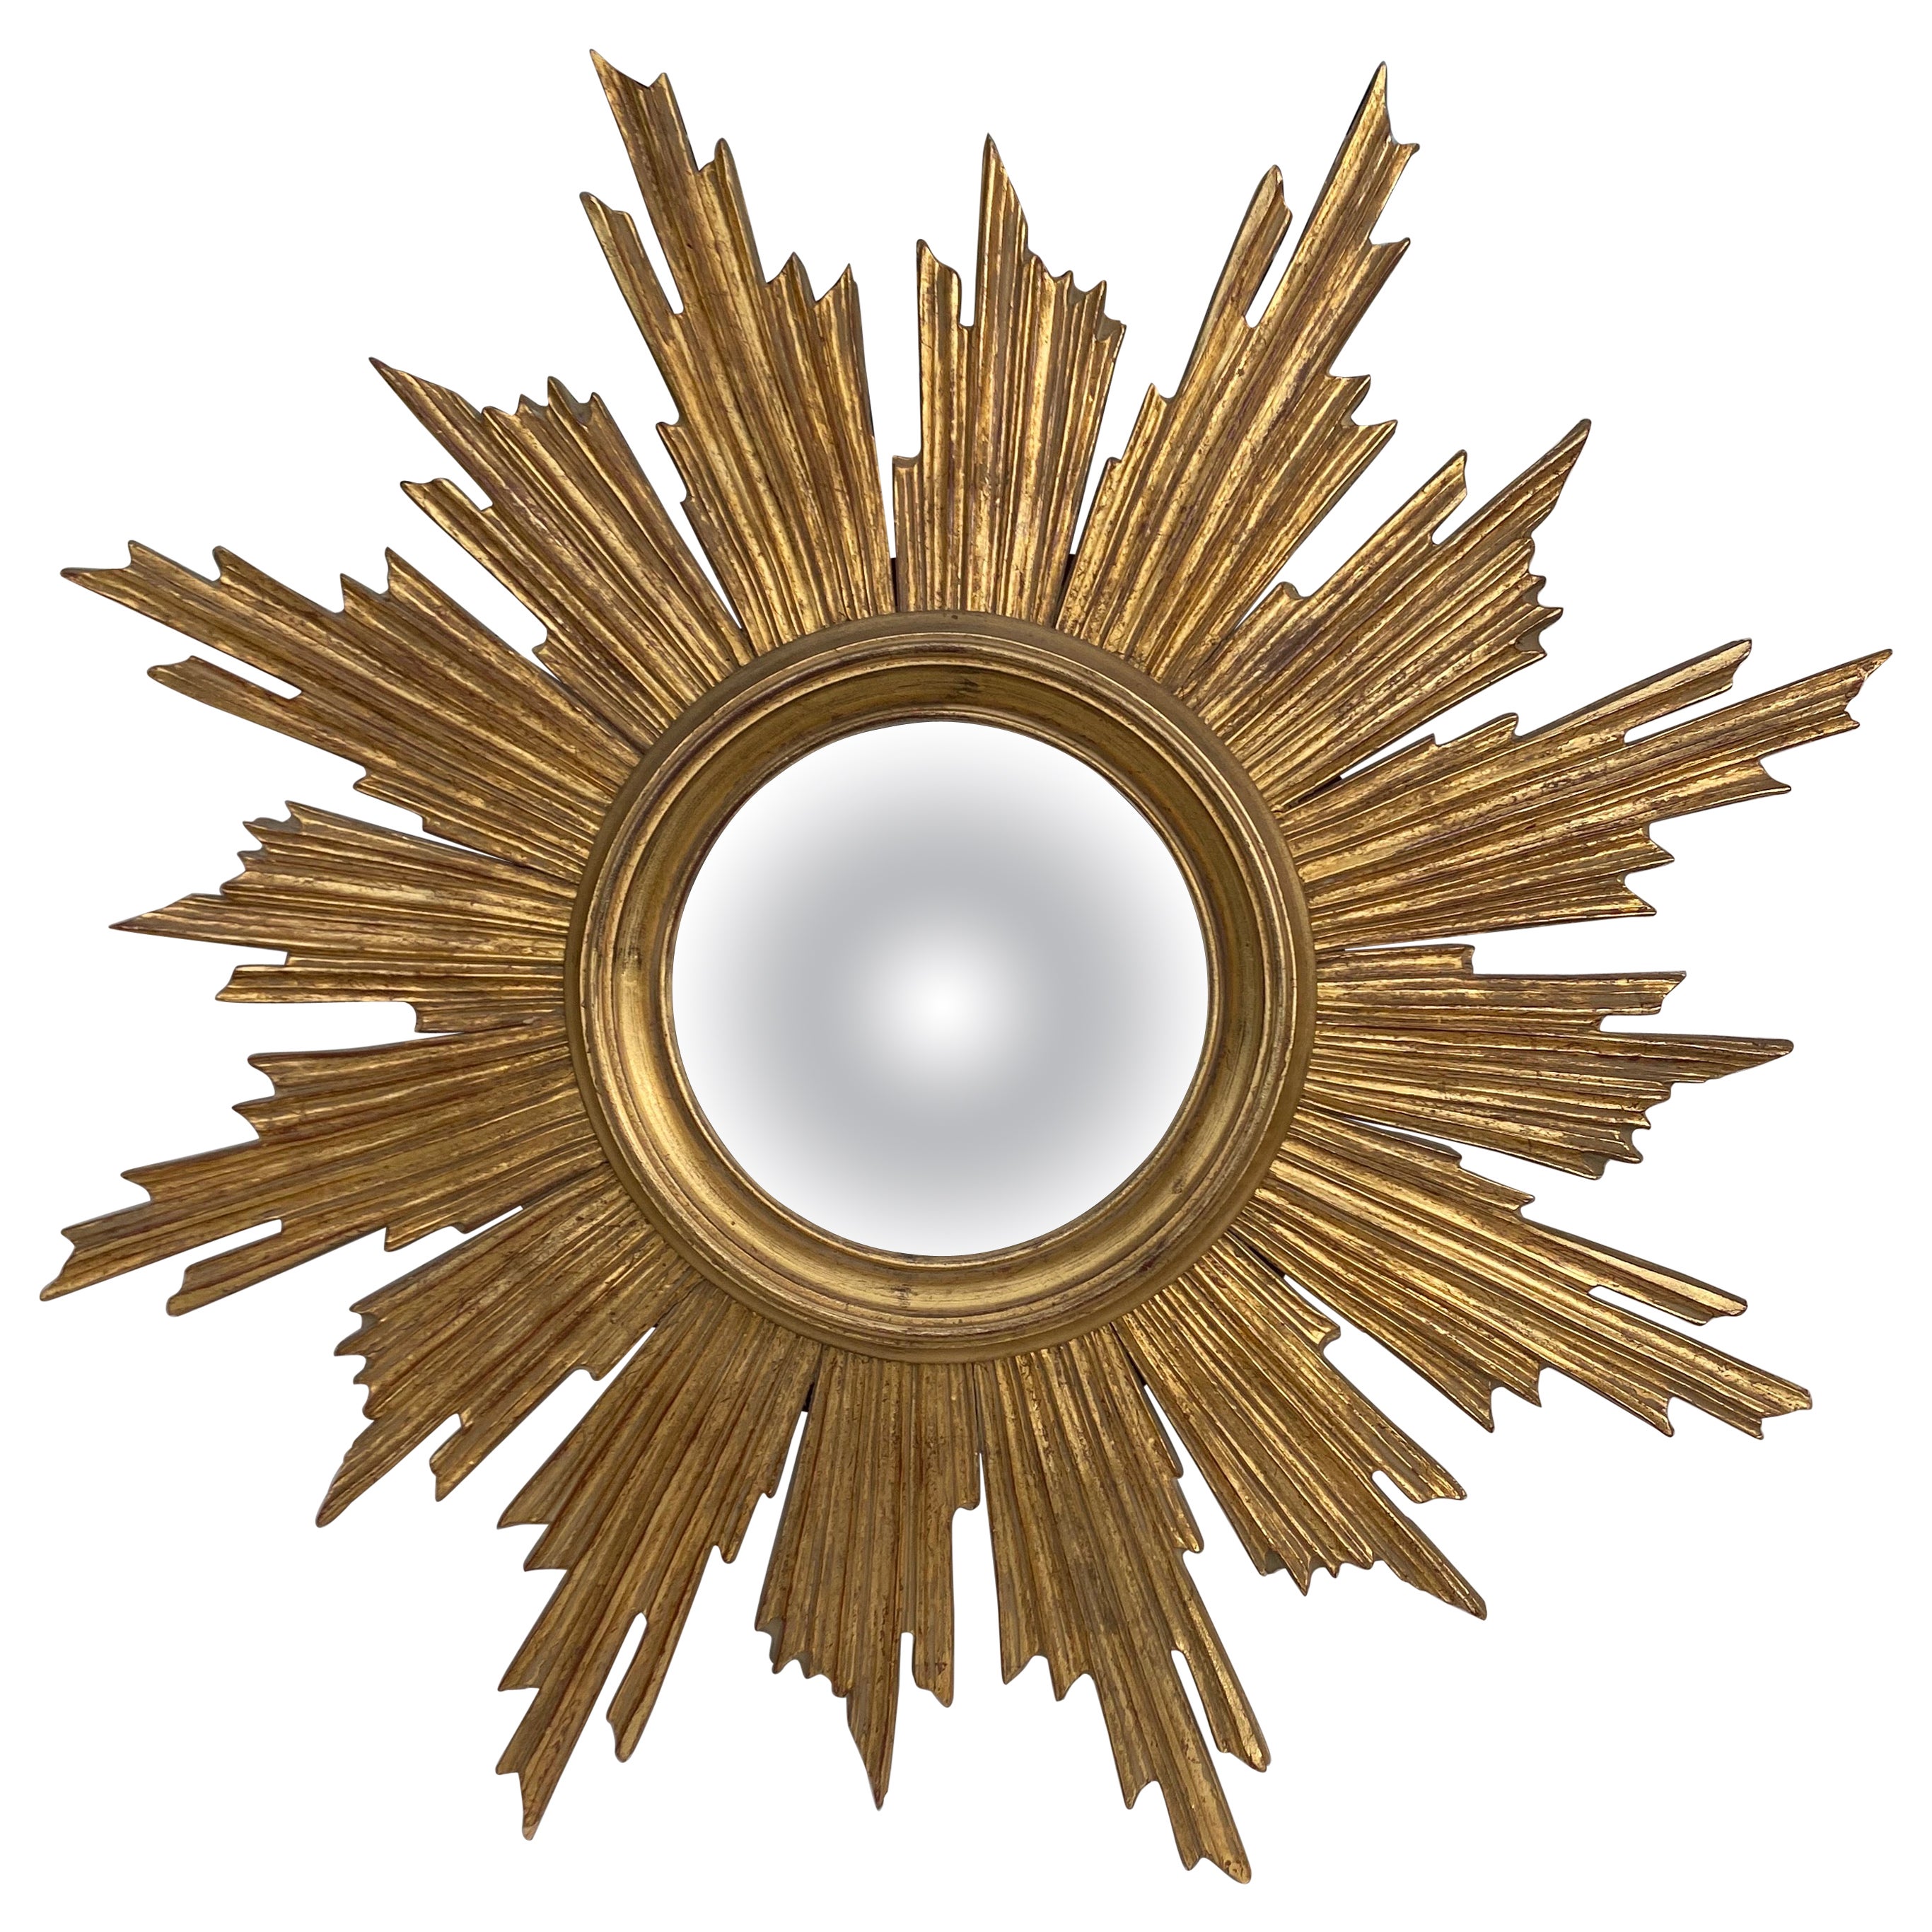 Französisch vergoldet Wood Convex Sunburst Spiegel